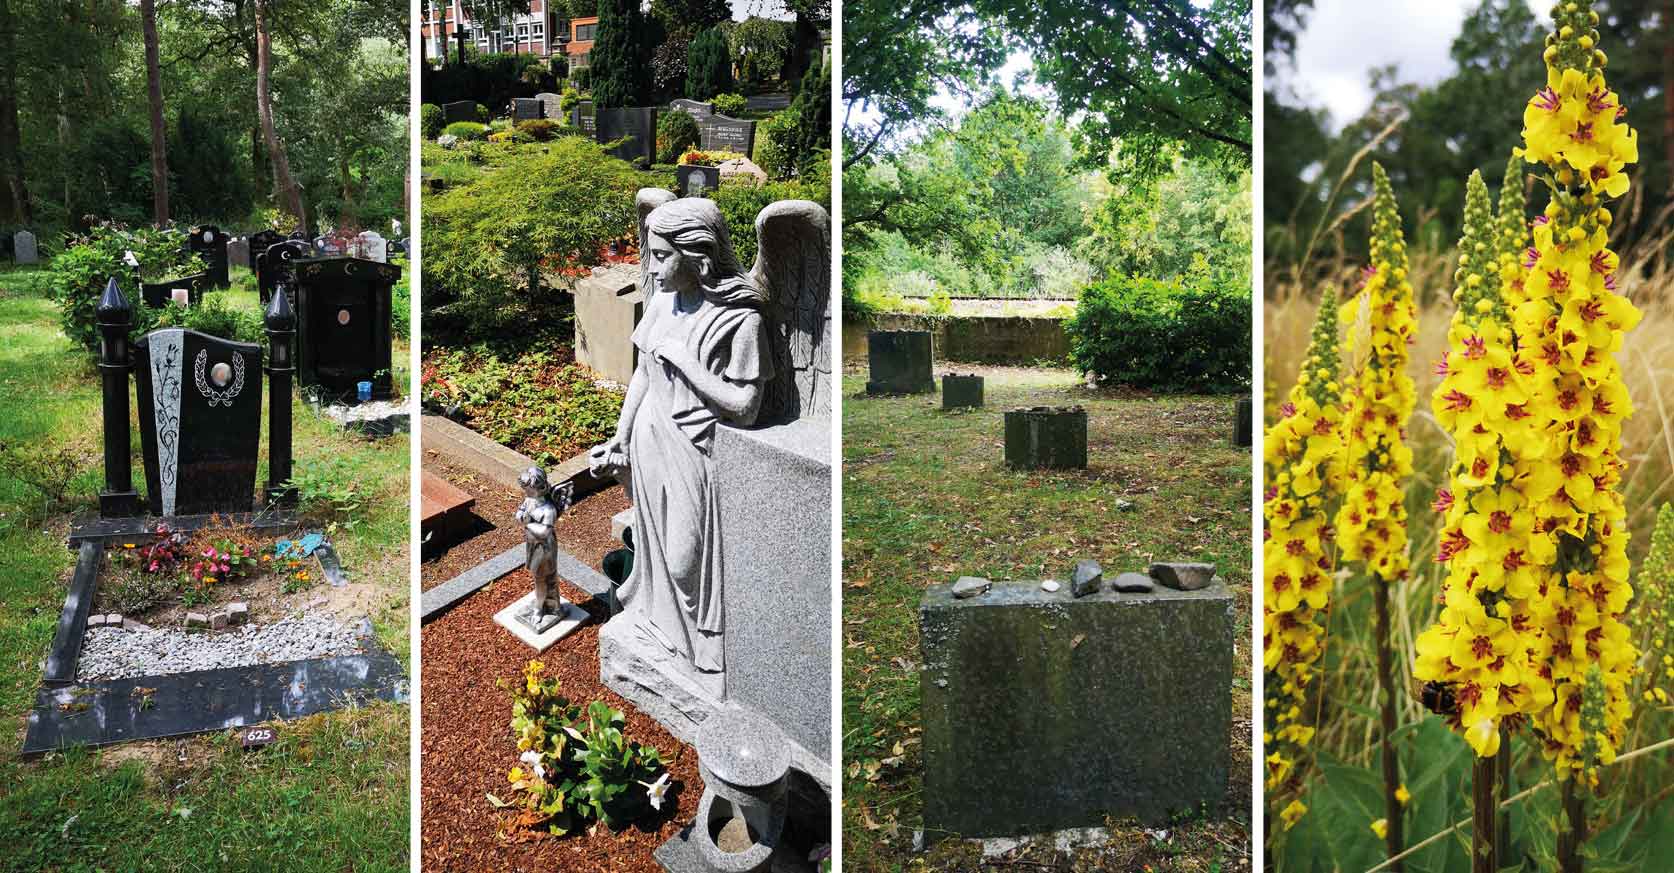 Der Friedhof lebt - Interreligiöse Archegärten in Deutschland (Fotos: Tonja Cappiello)